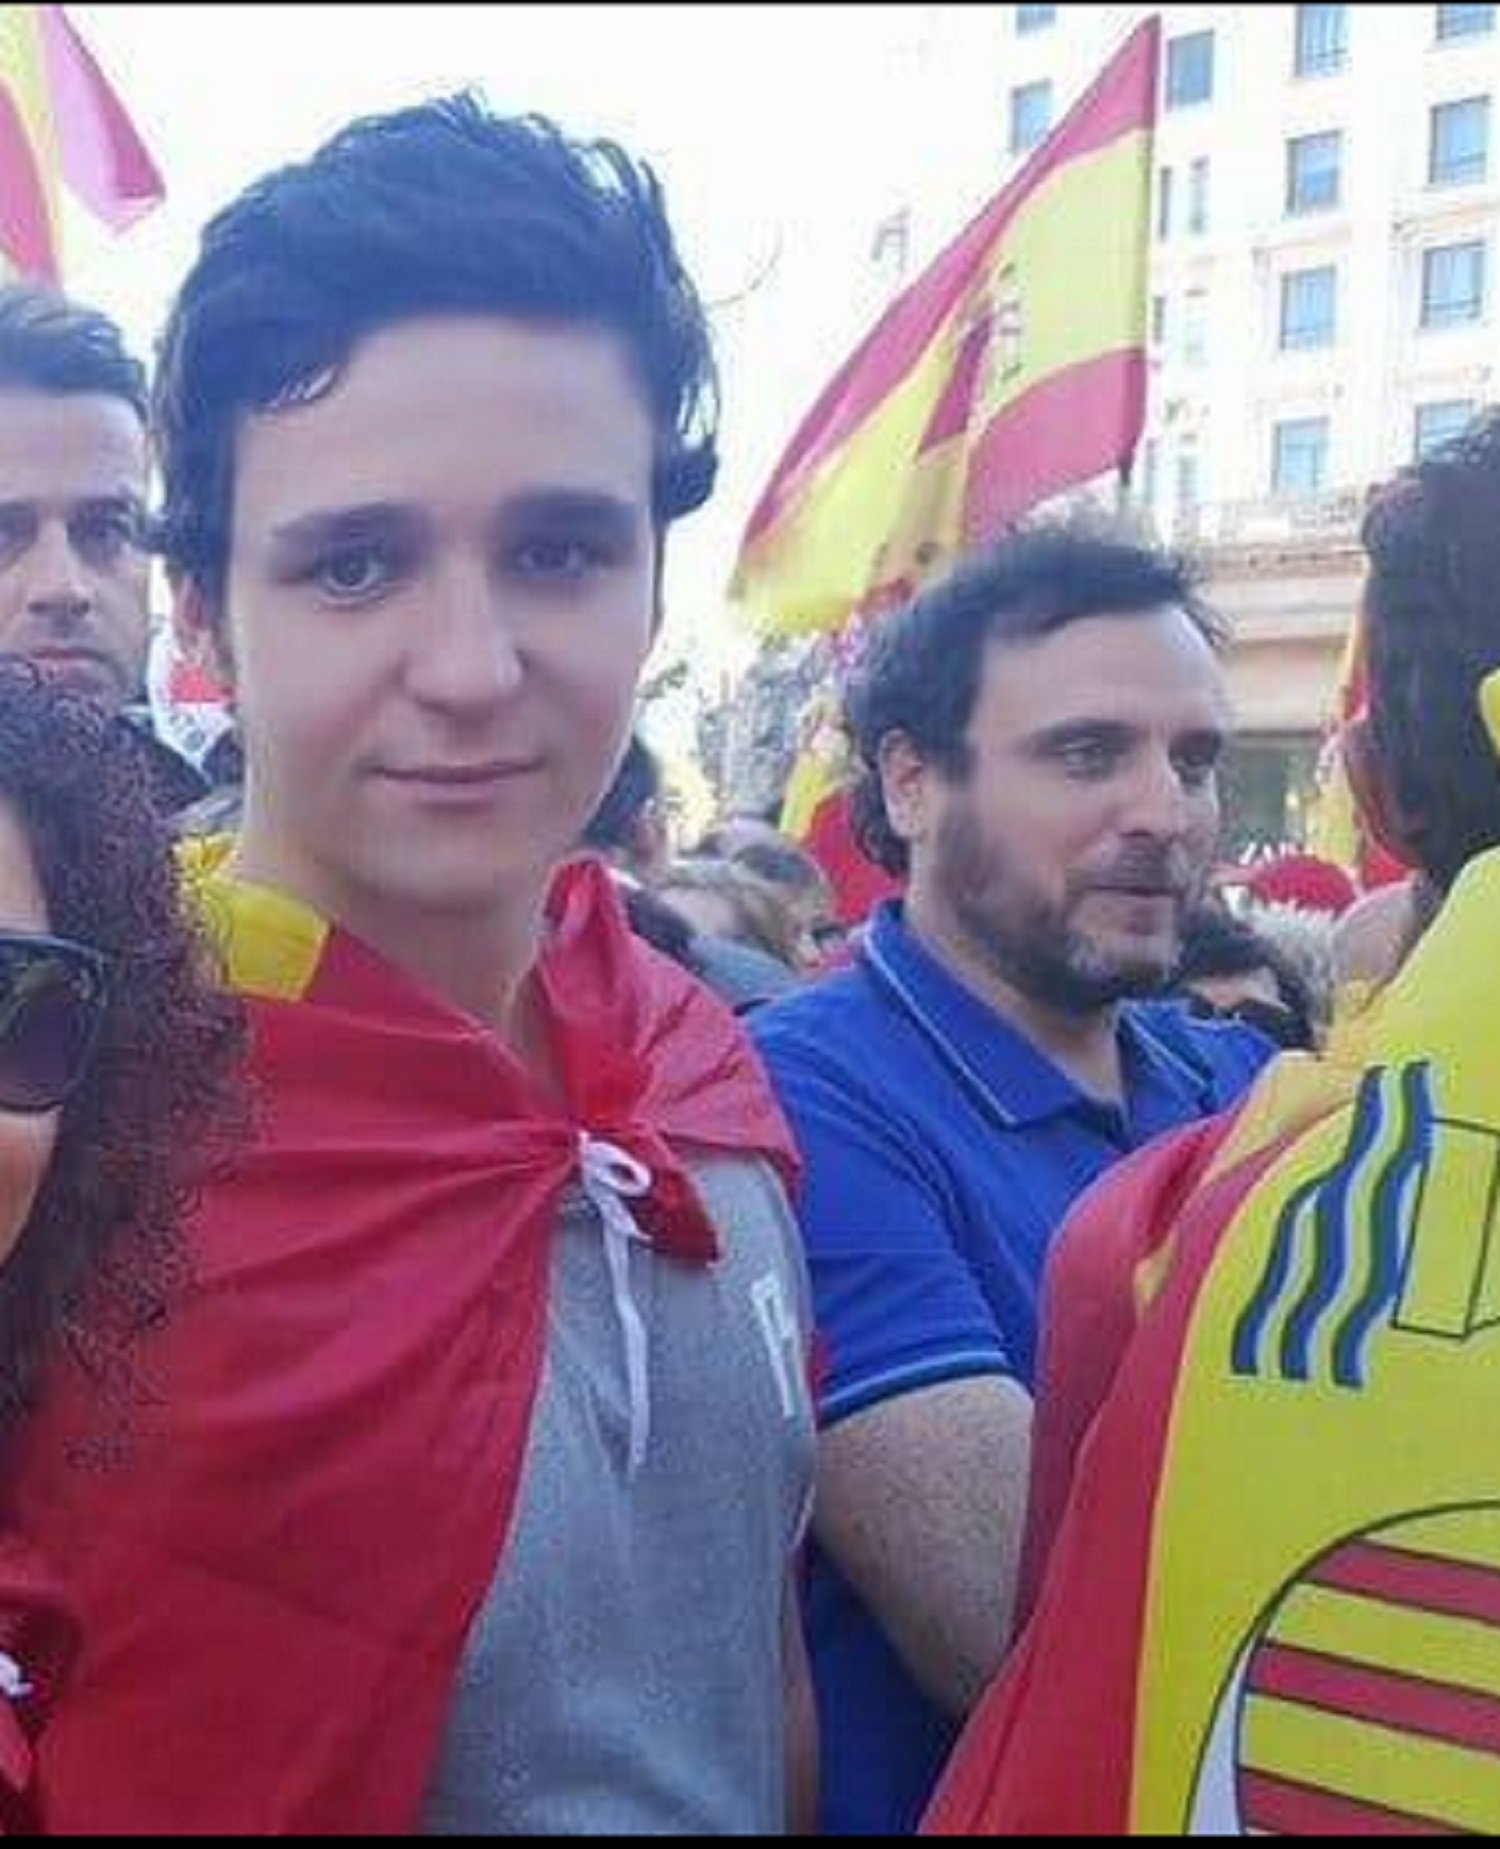 Froilán i amics, desfermats contra Puigdemont i en favor de Vox